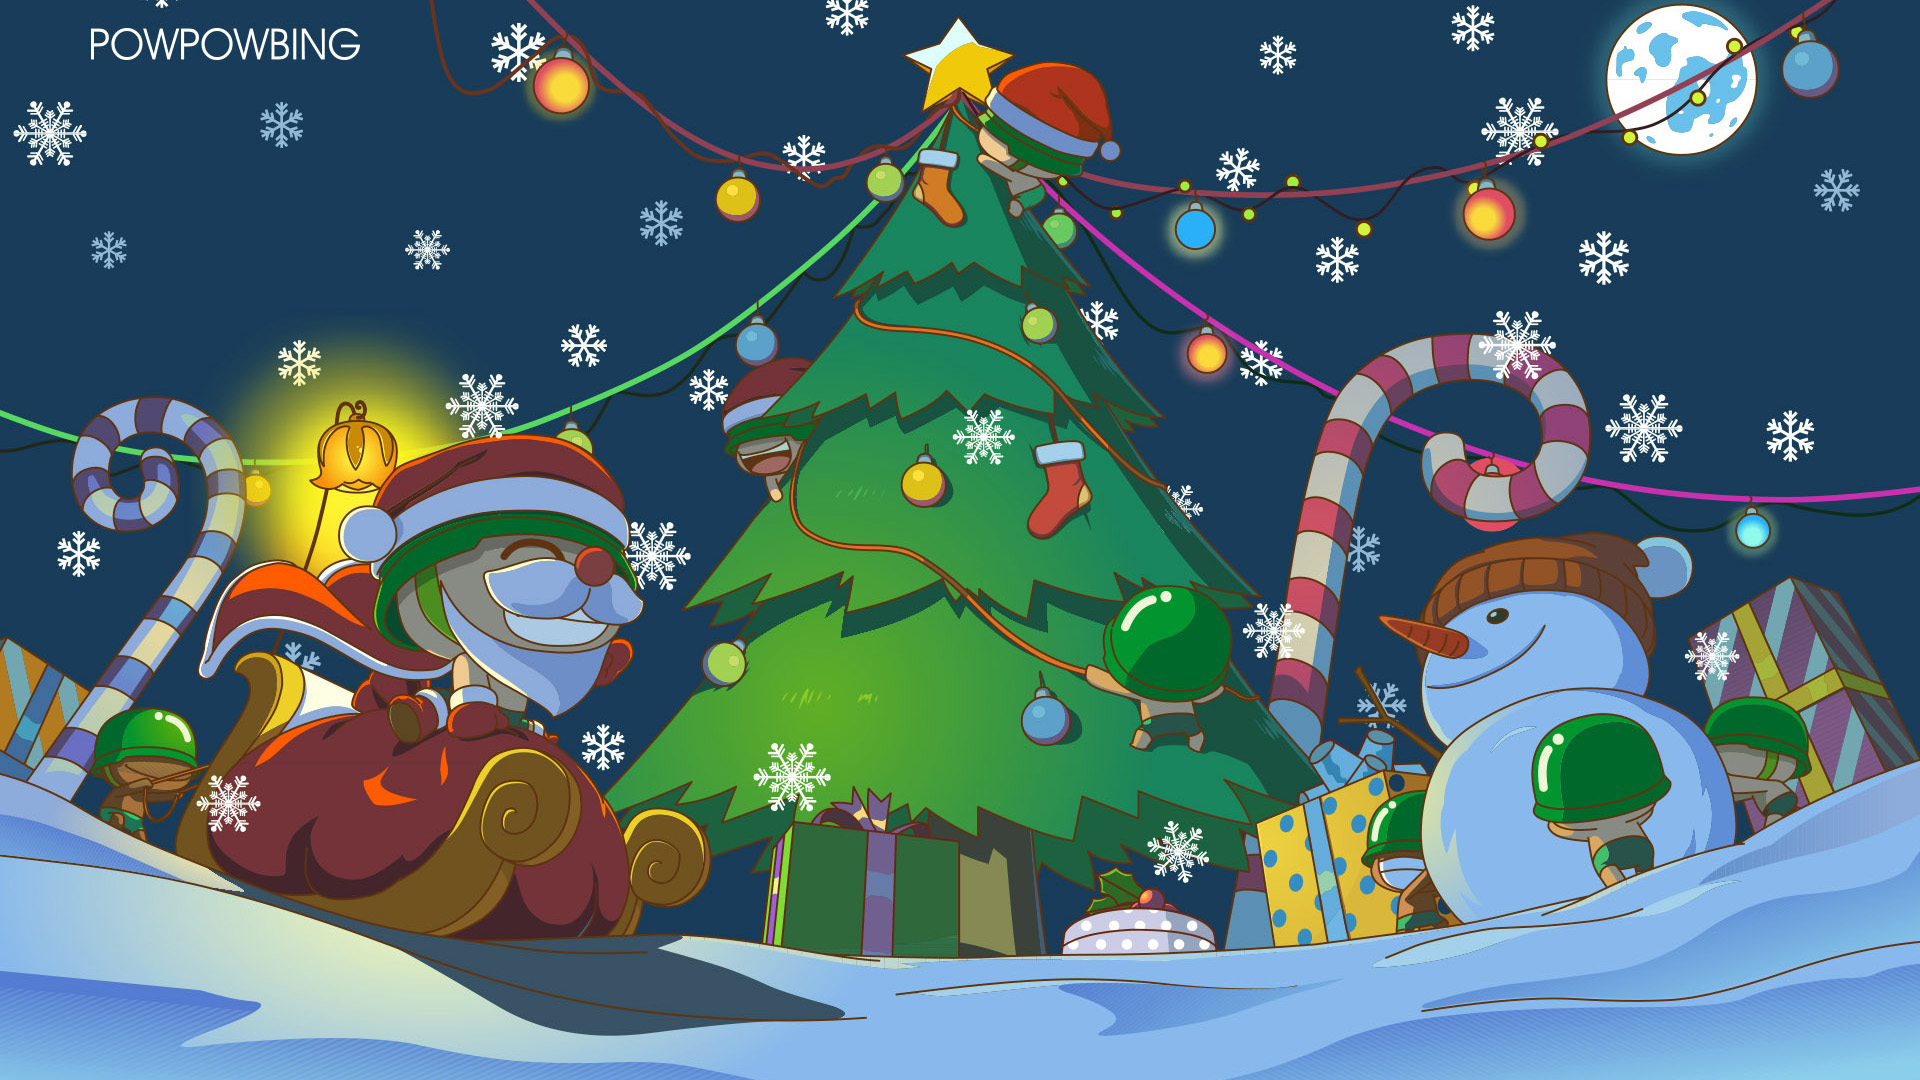 炮炮兵,圣诞节,玻璃球,圣诞老人,麋鹿,雪花,圣诞树,雪人,桌面壁纸